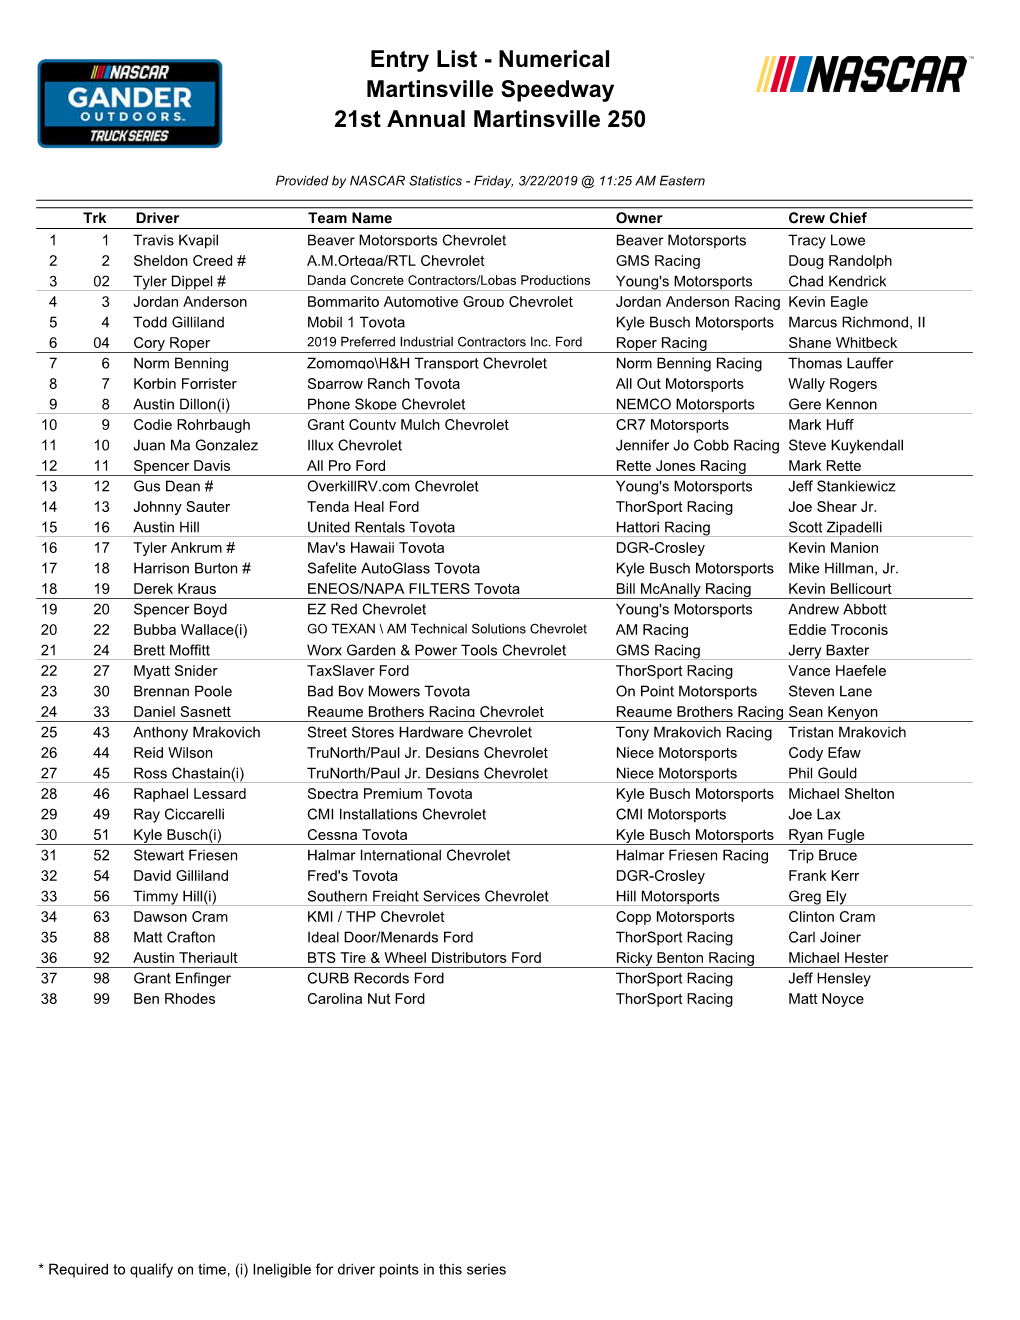 Entry List - Numerical Martinsville Speedway 21St Annual Martinsville 250